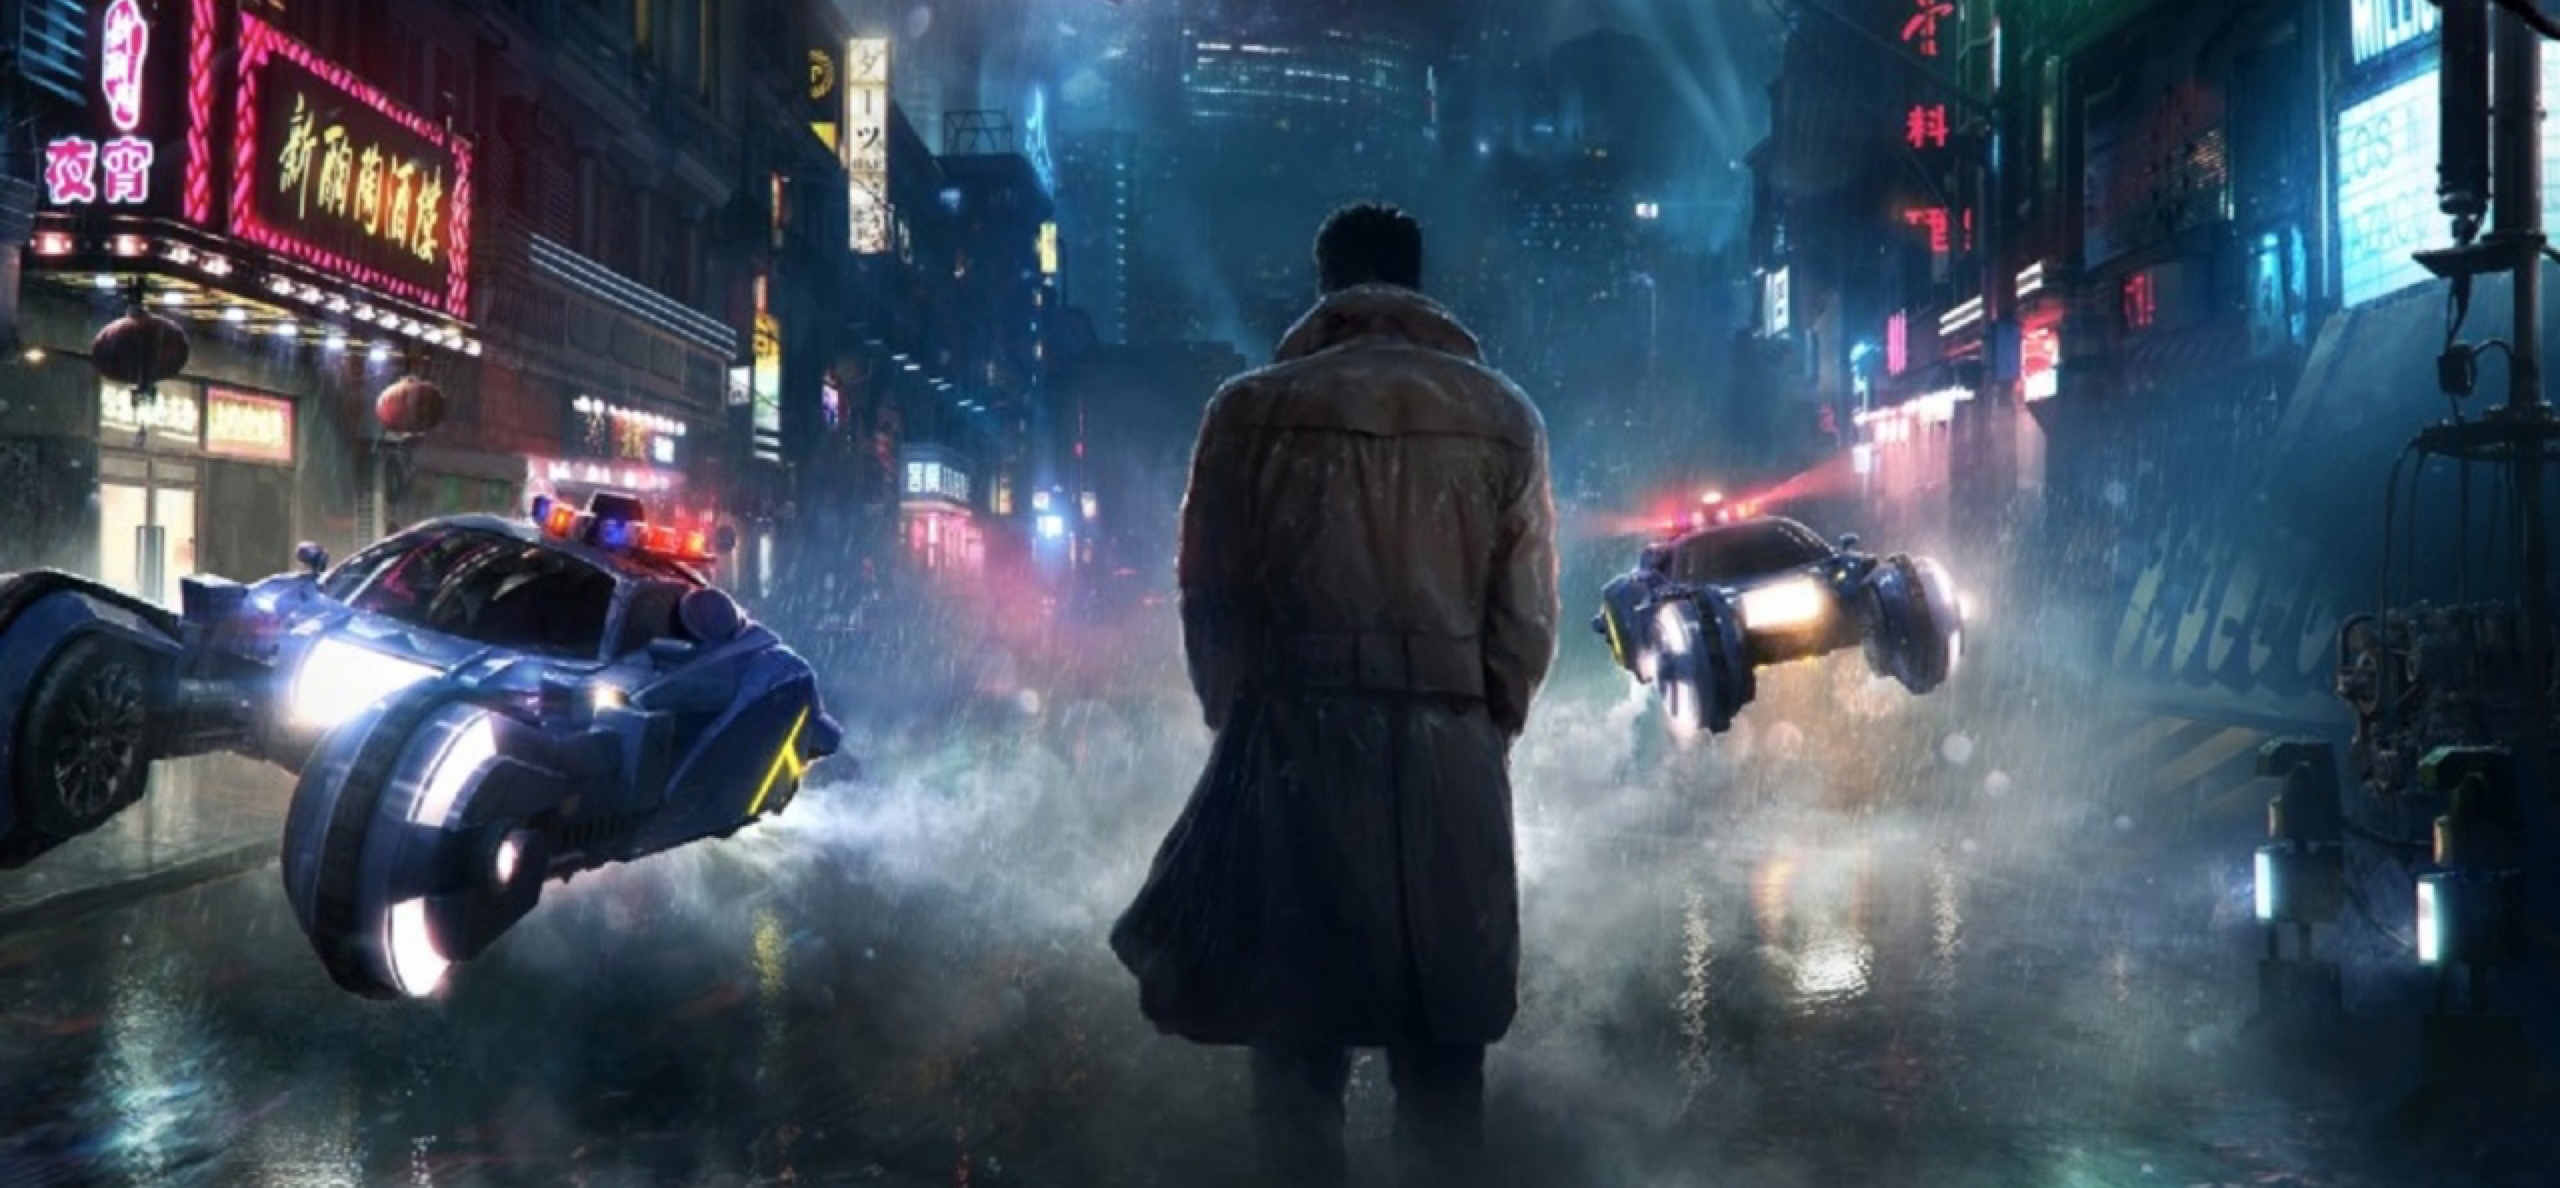 Este nuevo de Blade Runner te cuenta qué pasó en 2036